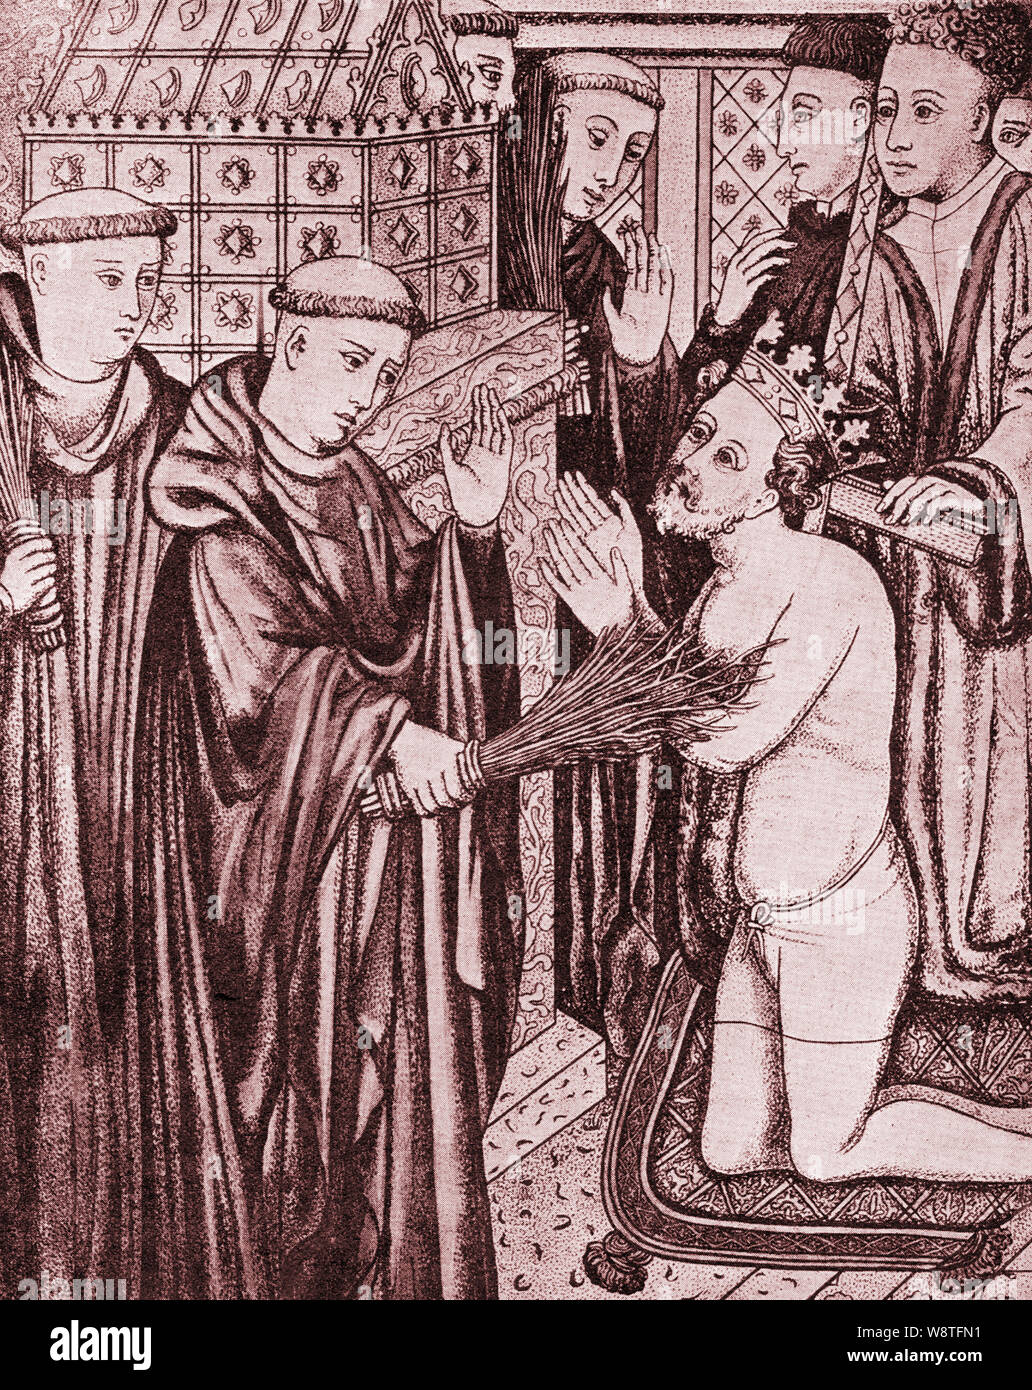 König Heinrich II. von England in 1173, Buße zu tun, die von der Geißelung vor dem Grab des Thomas Becket, er hatte über Reginald FitzUrse, Hugh de Morville, William de Tracy und Richard Le Breton 1170 (aus einem alten Manuskript) ermordet wurde. Stockfoto